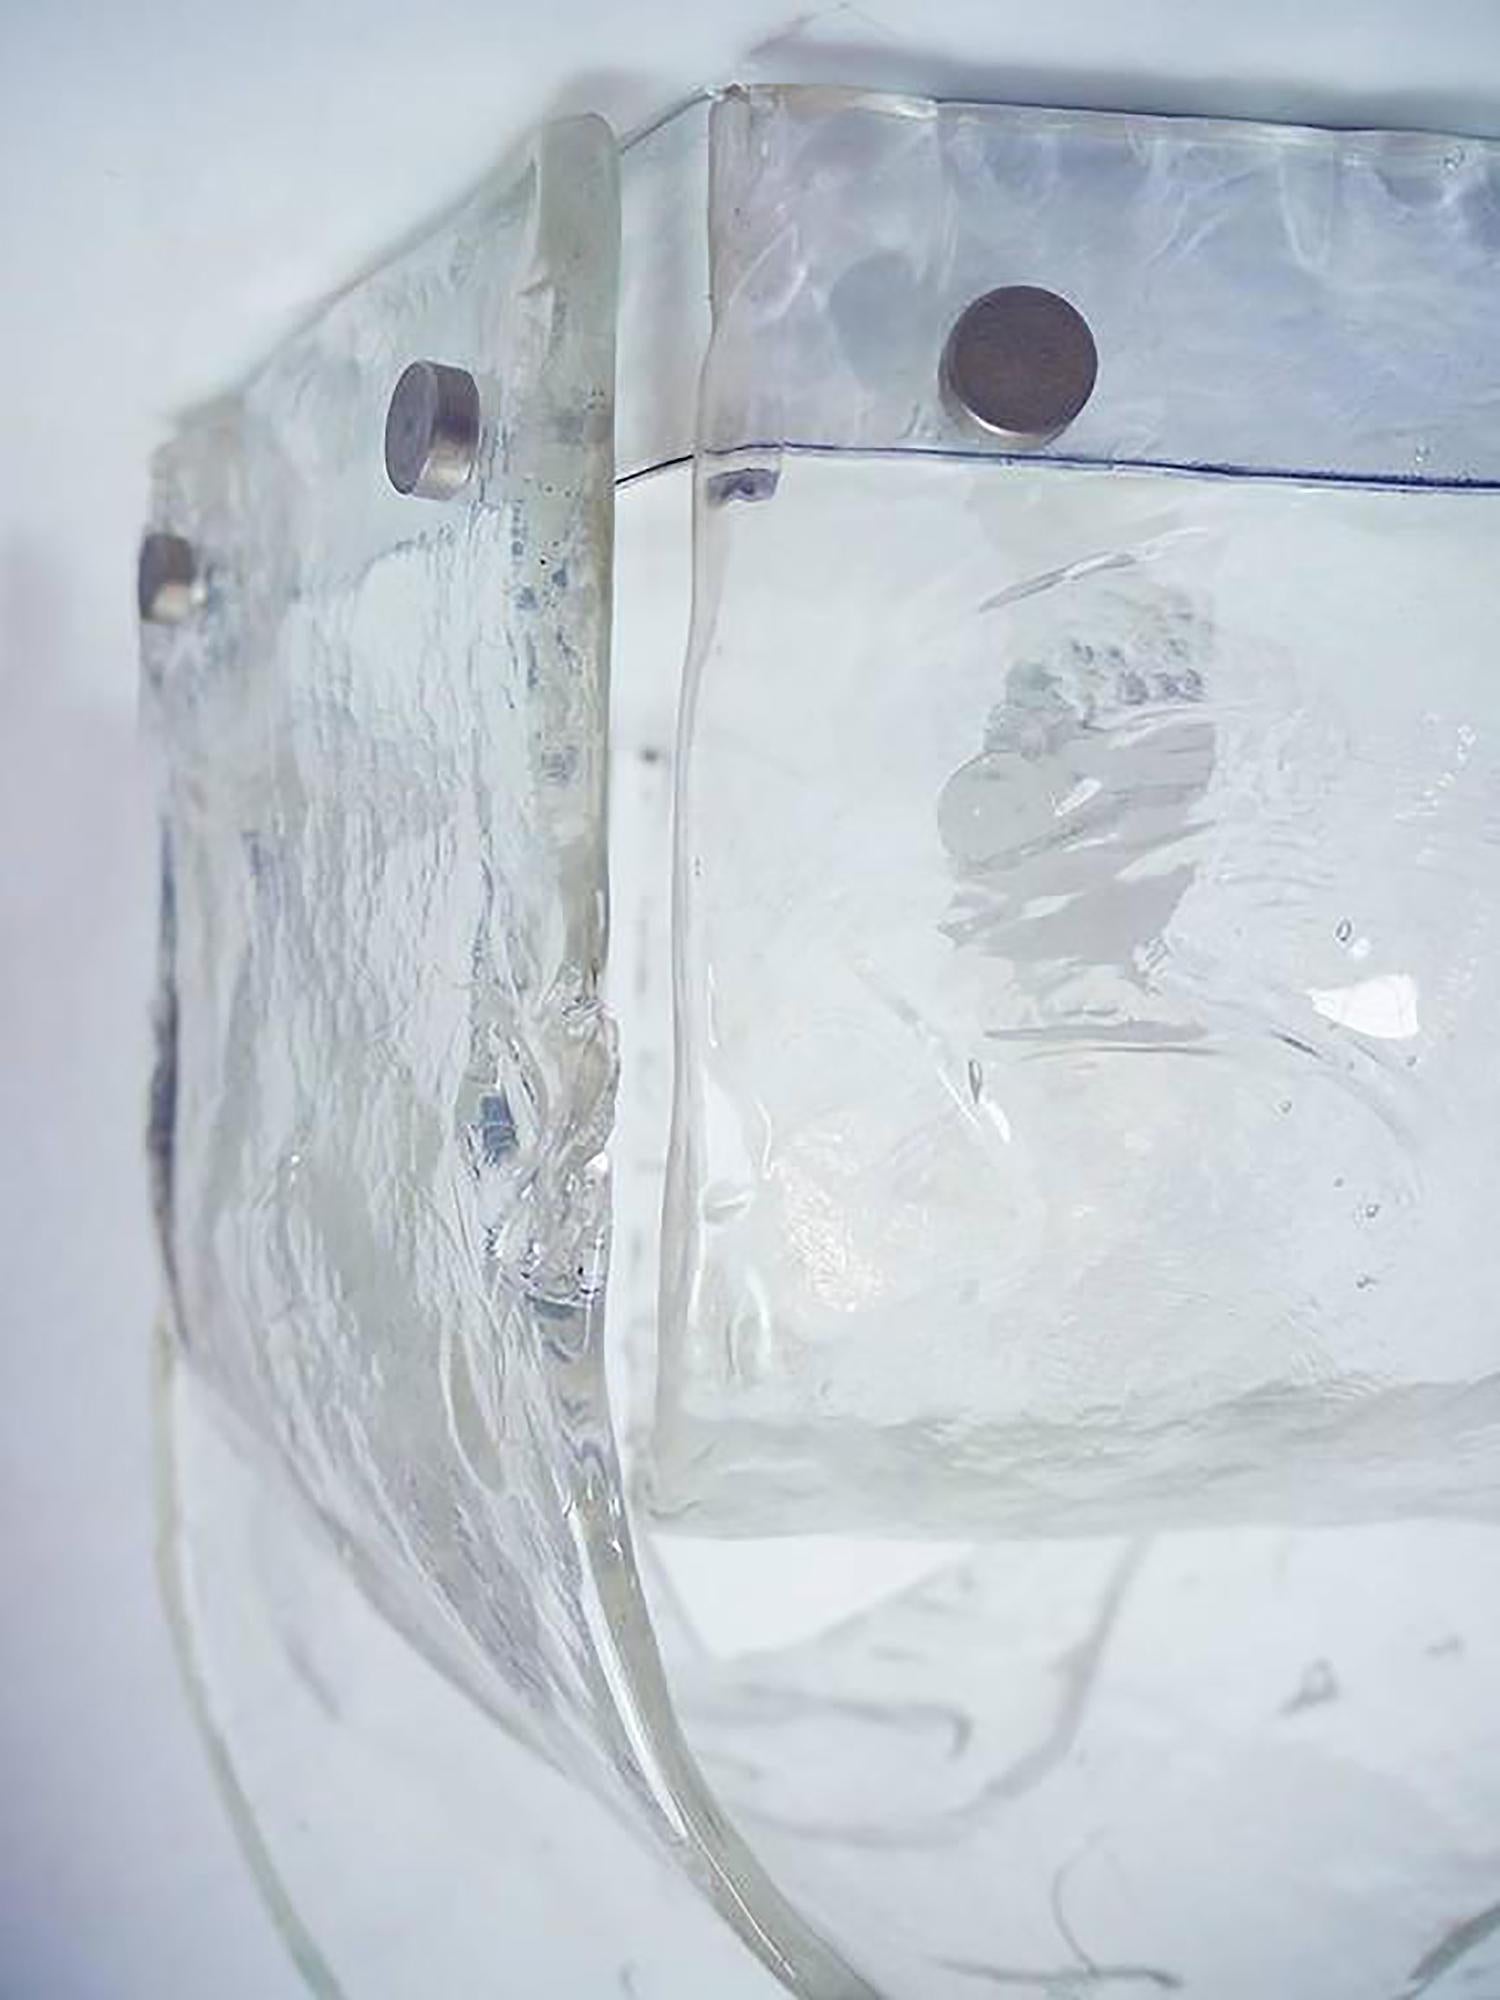 Elegante mundgeblasene italienische Leuchte von Carlo Nason für Mazzega in einem Eisglasmuster. Hergestellt in Italien in den 1960er Jahren. 
 
Design: Carlo Nason. 
Schöpfer: Mazzega. 
Maße: Höhe 35 cm (13.8